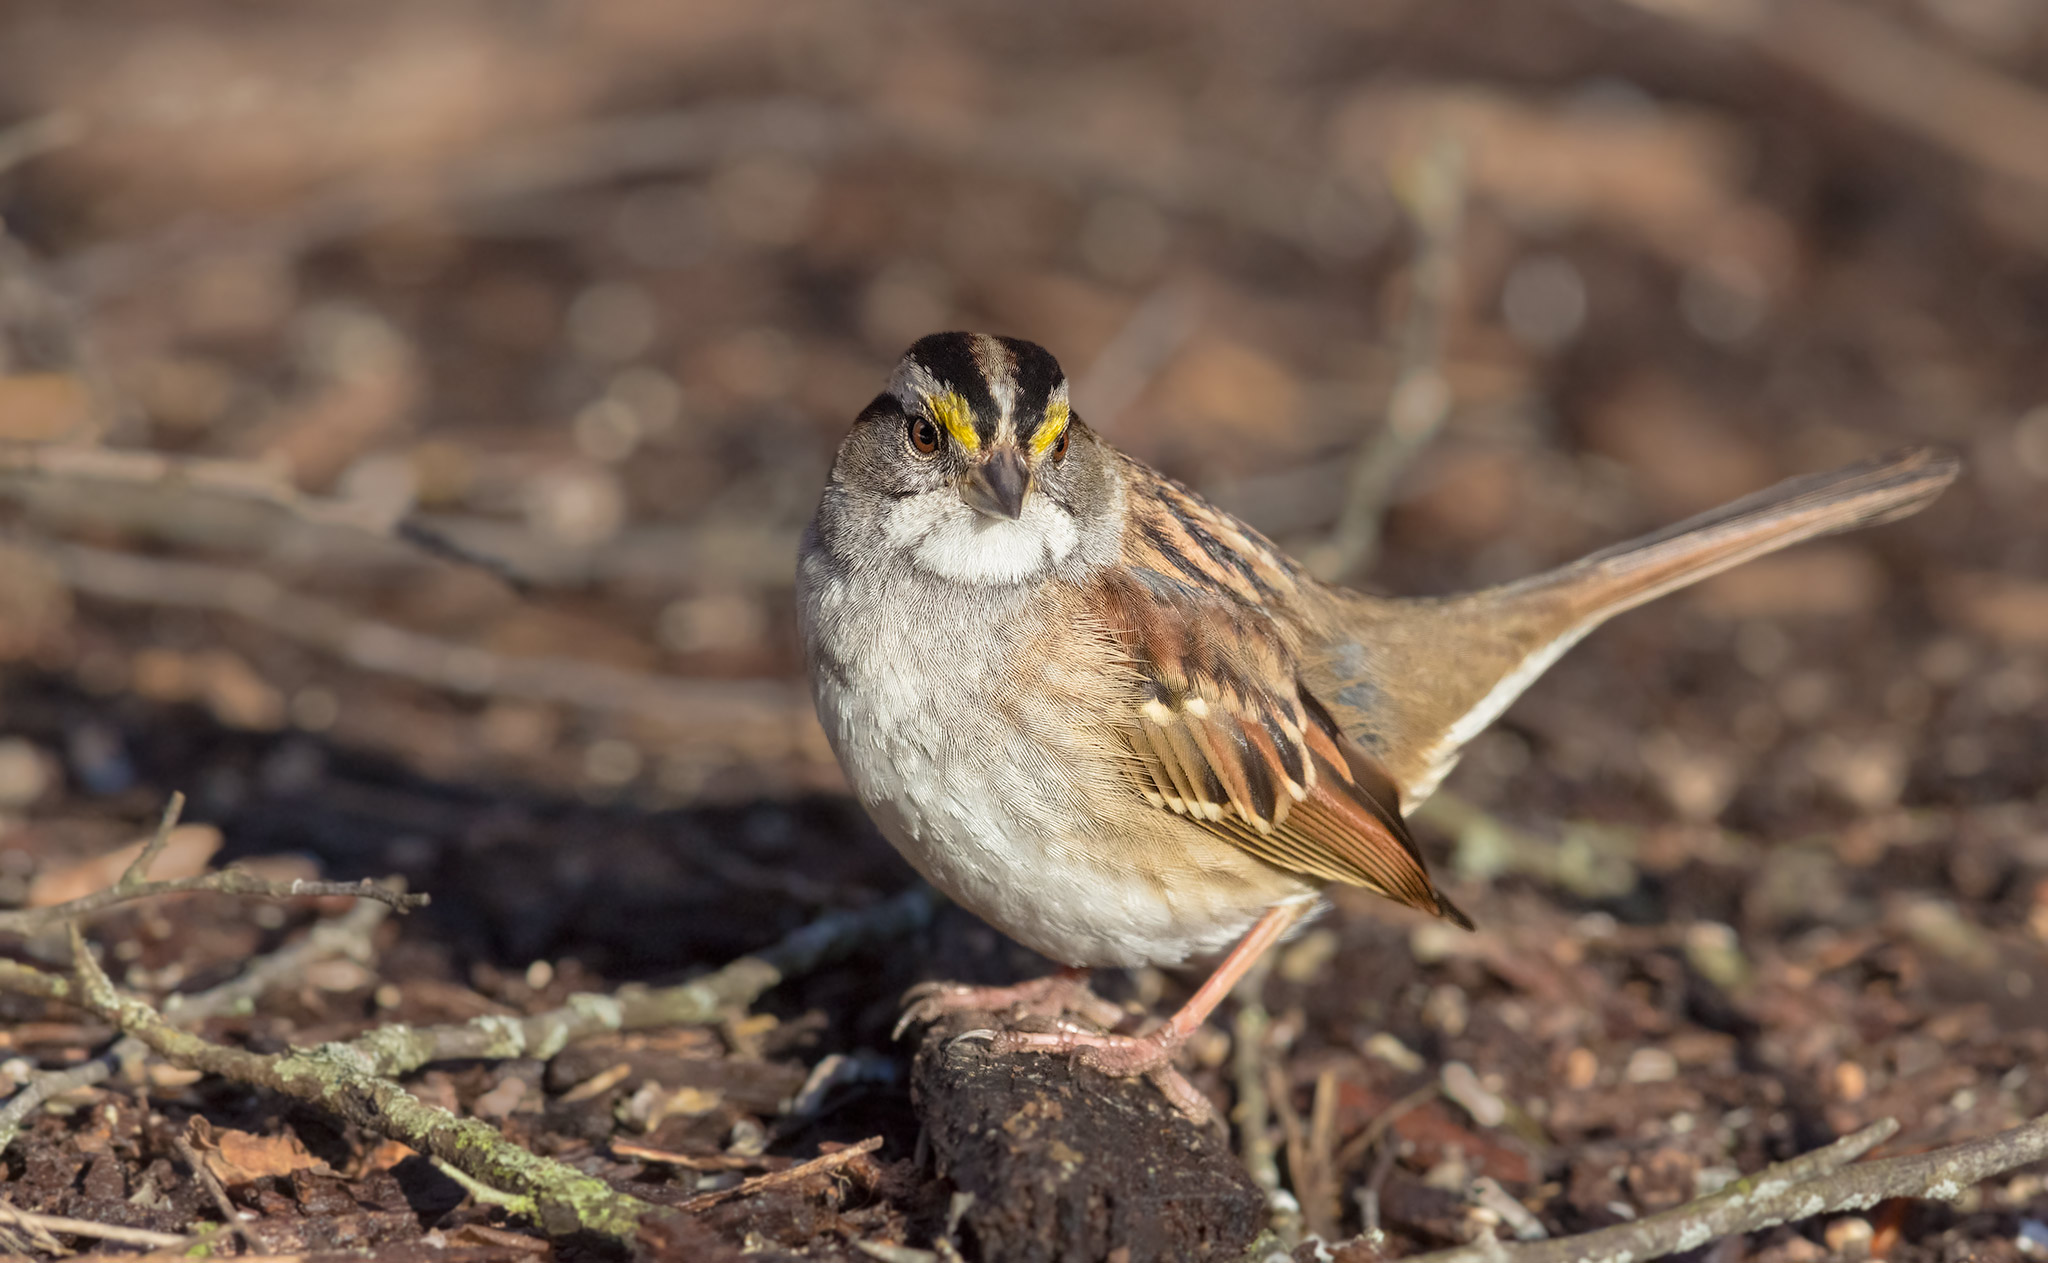 the sparrow